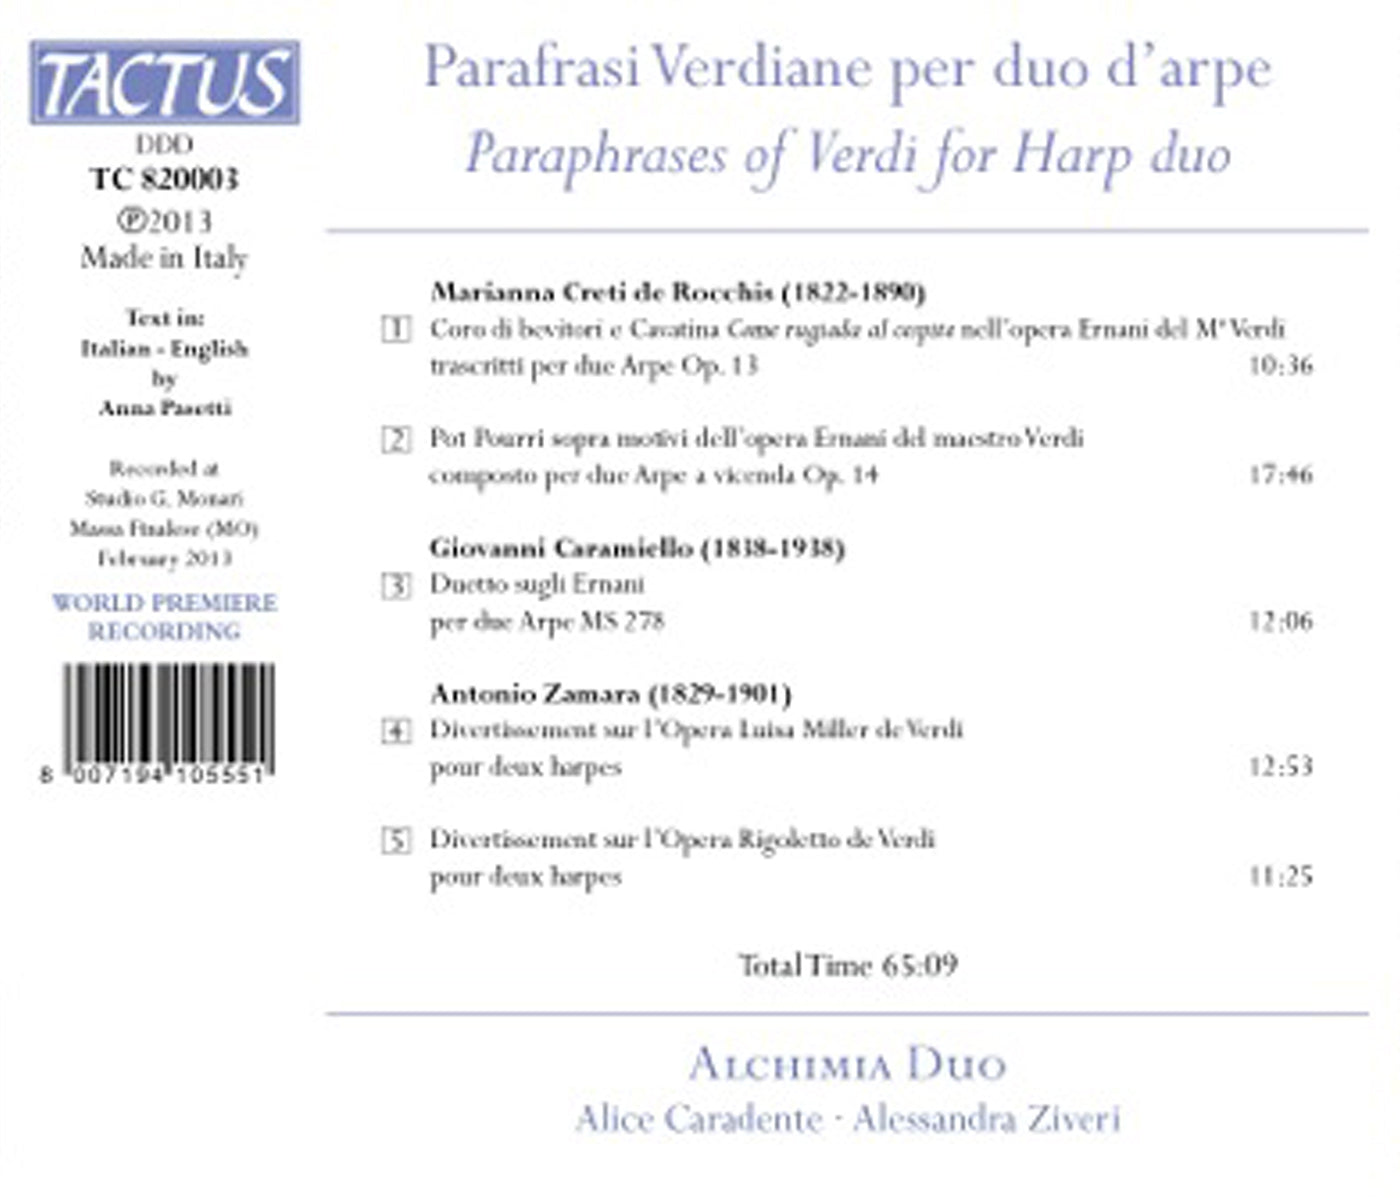 Rocchis, Caramiello & Zamara: Parafrasi Verdiane per duo d’arpe / Alchimia Duo